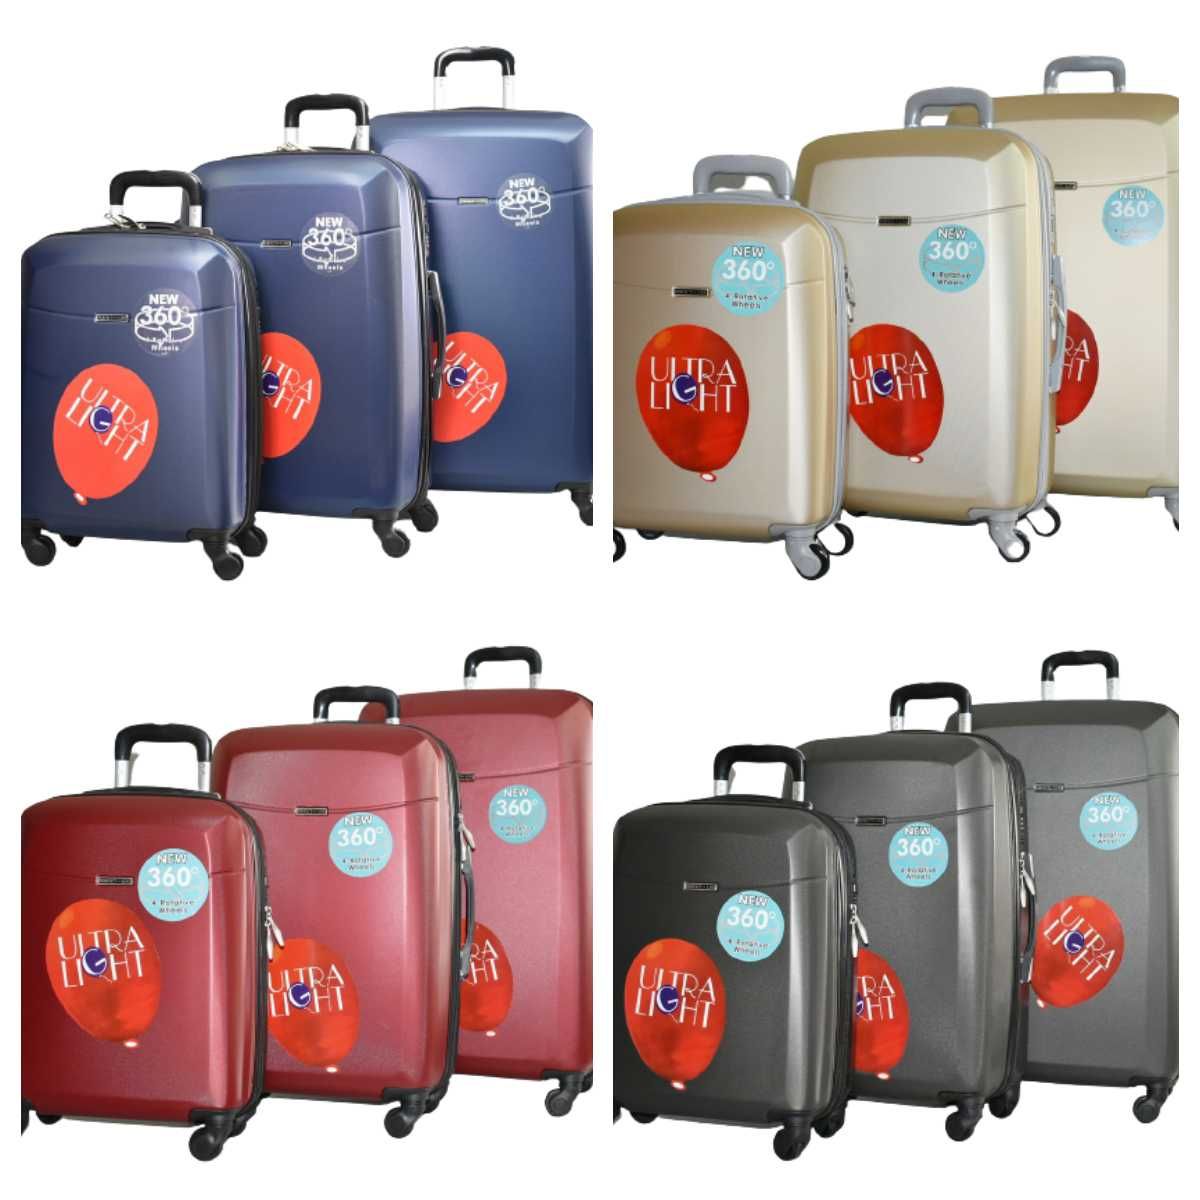 Твърди куфари в три размера, в няколко цвята КОД: 8093